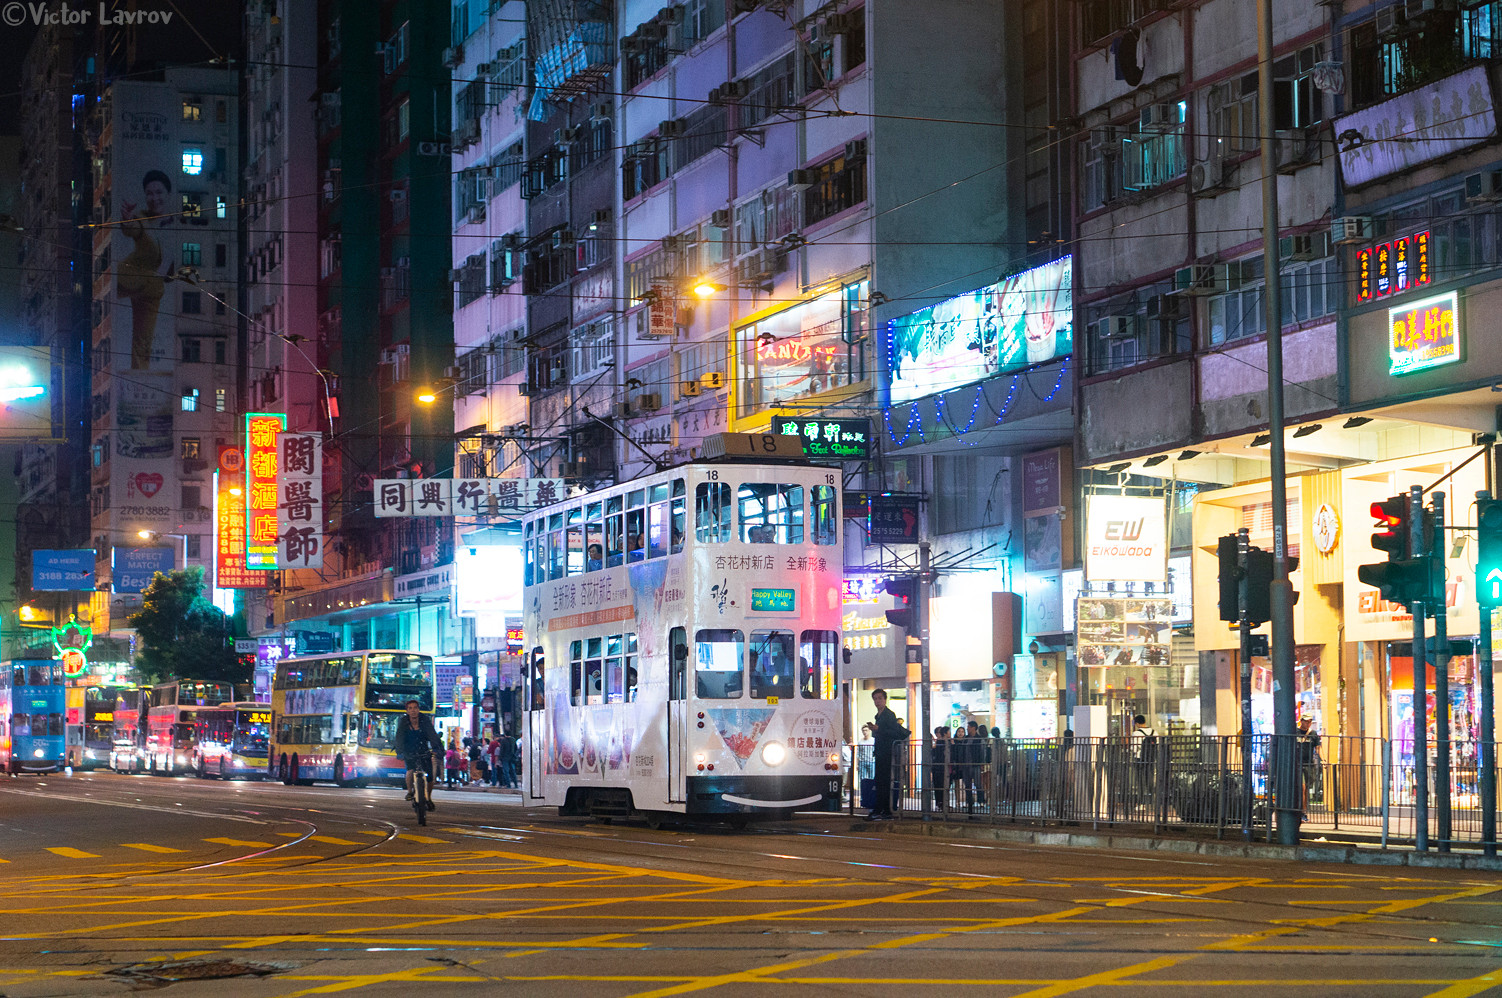 Hong Kong, Hong Kong Tramways VI — 18